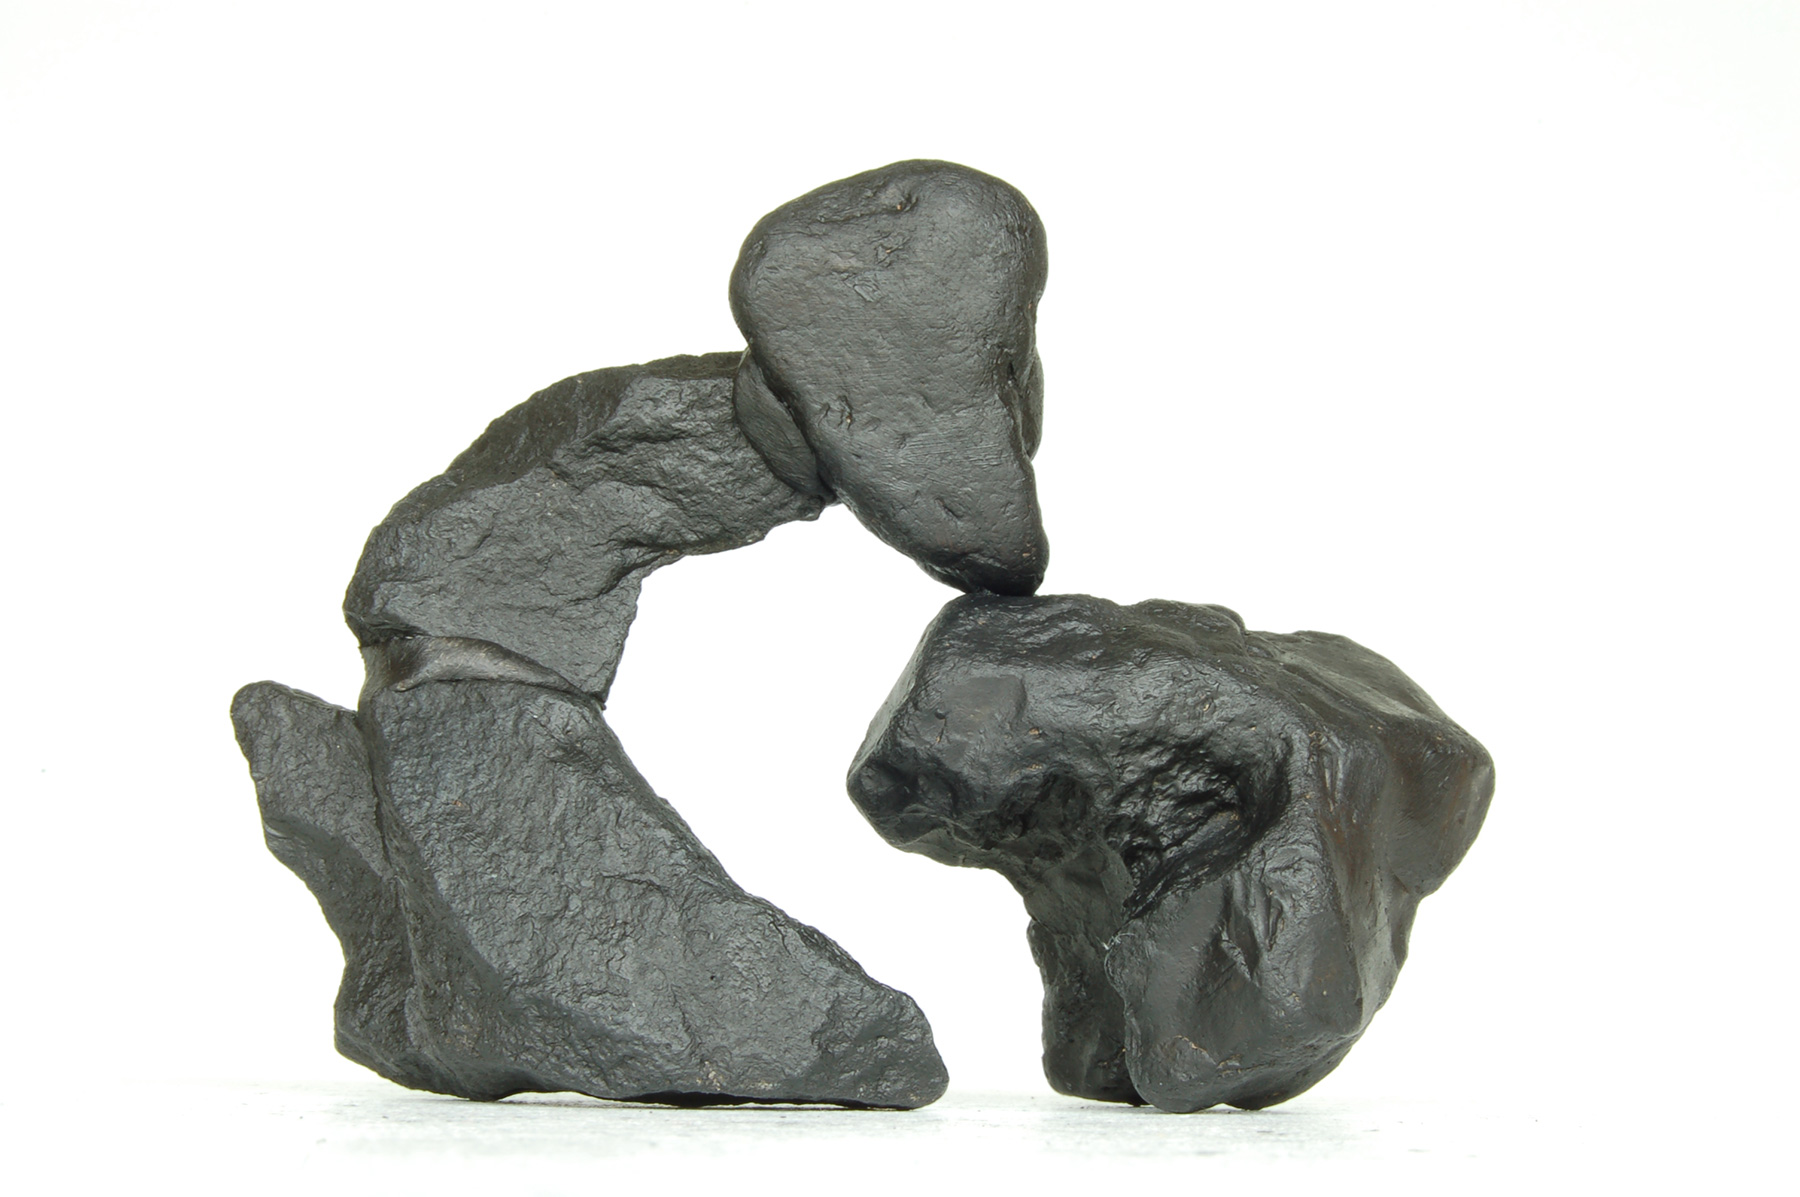 Jean-Michel Sanejouand - Sculpture - Boire à la source - 2010 - Stones painted in black